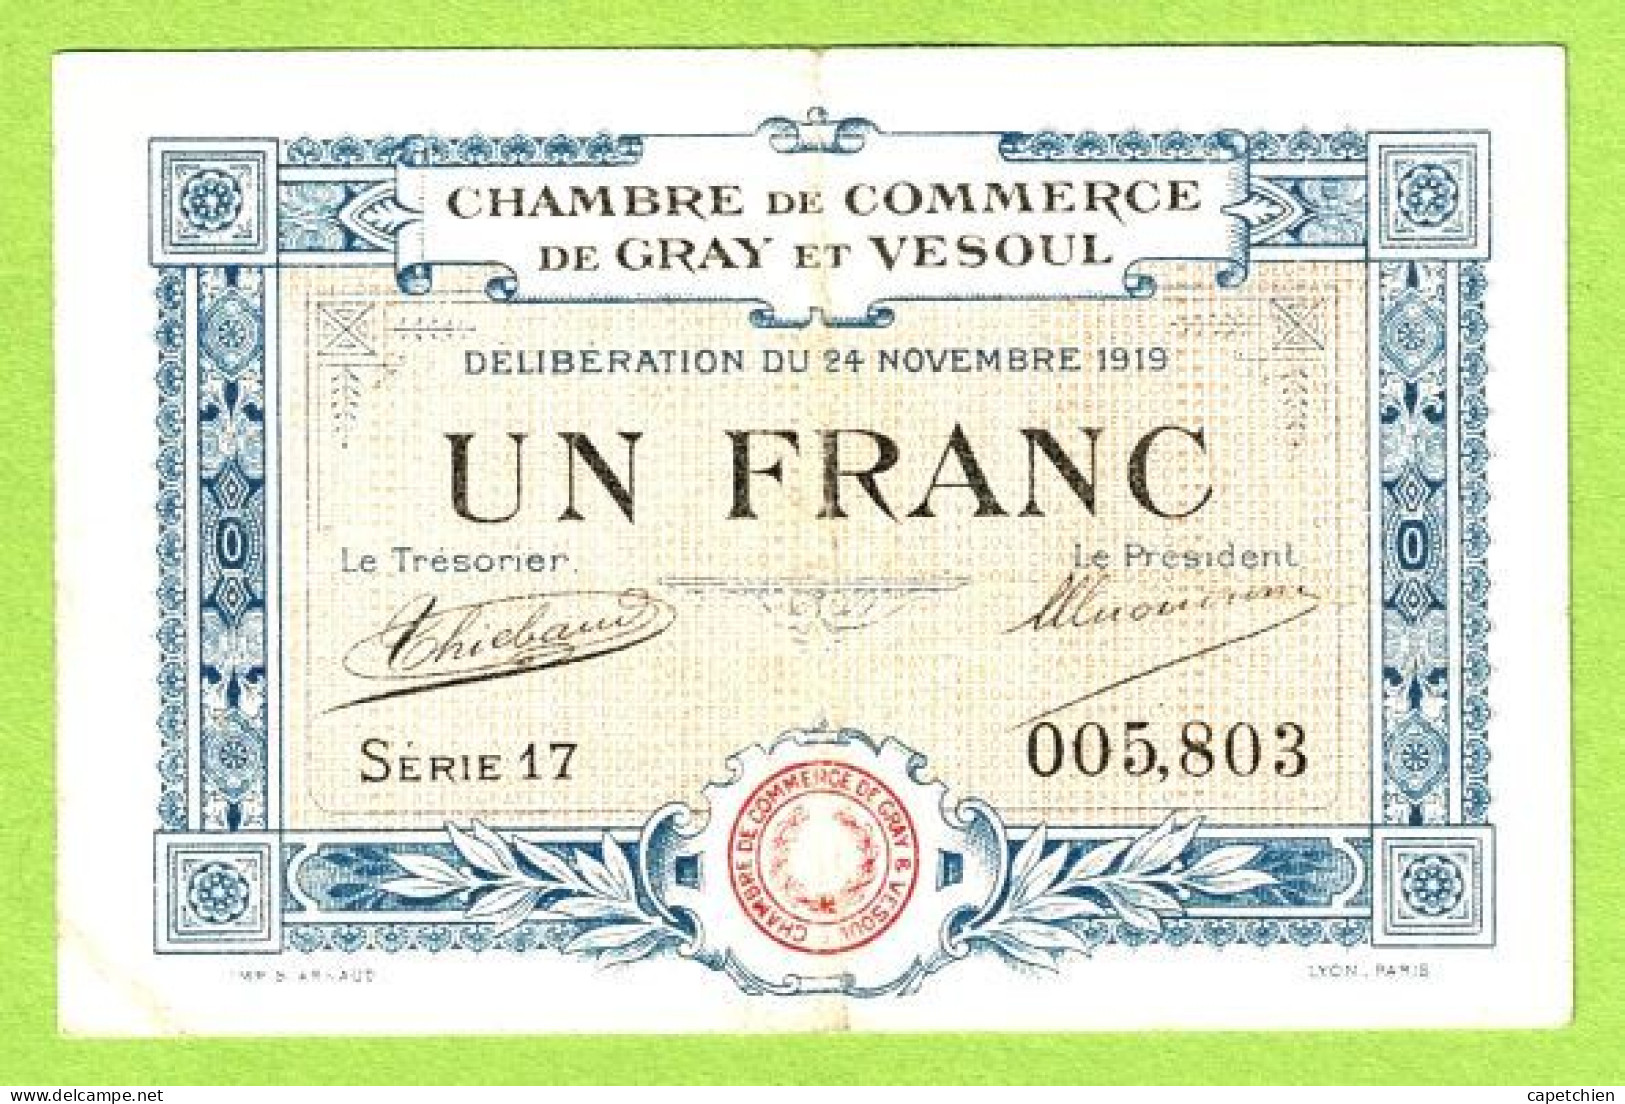 FRANCE / CHAMBRE De COMMERCE / GRAY -  VESOUL / 1 FRANC / 24 NOVEMBRE 1919 / SERIE 17 / N° 005803 - Chambre De Commerce